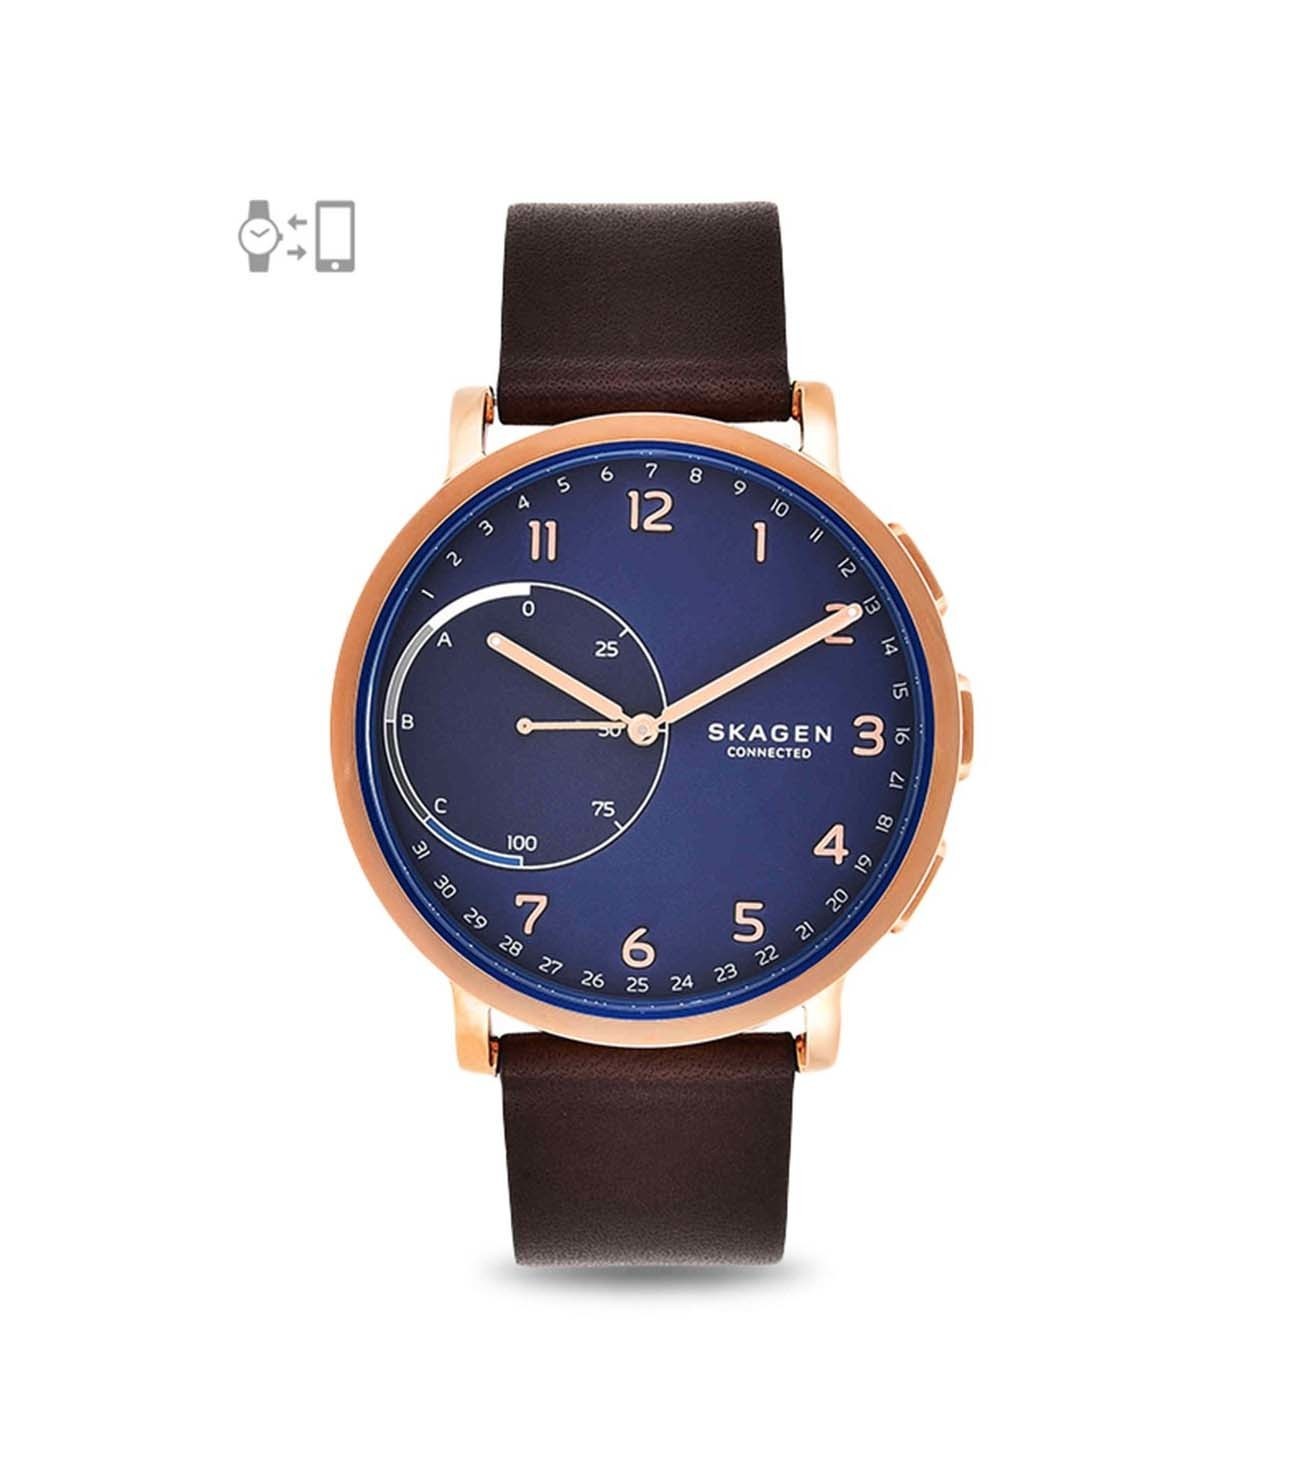 SKAGEN SKT1103 Hagen Connected Smart watch Watch for Men